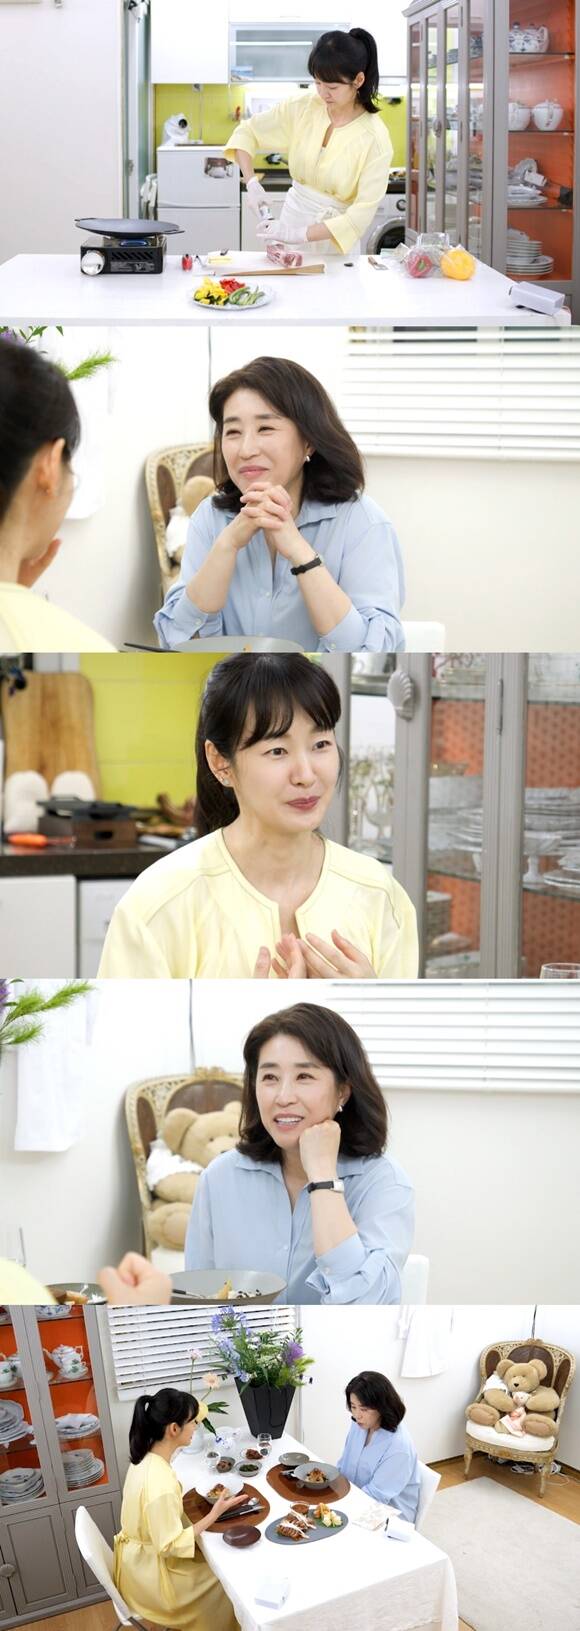 배우 명세빈이 신상출시 편스토랑에서 김미경을 초대해 함께 식사를 나눈다. /KBS